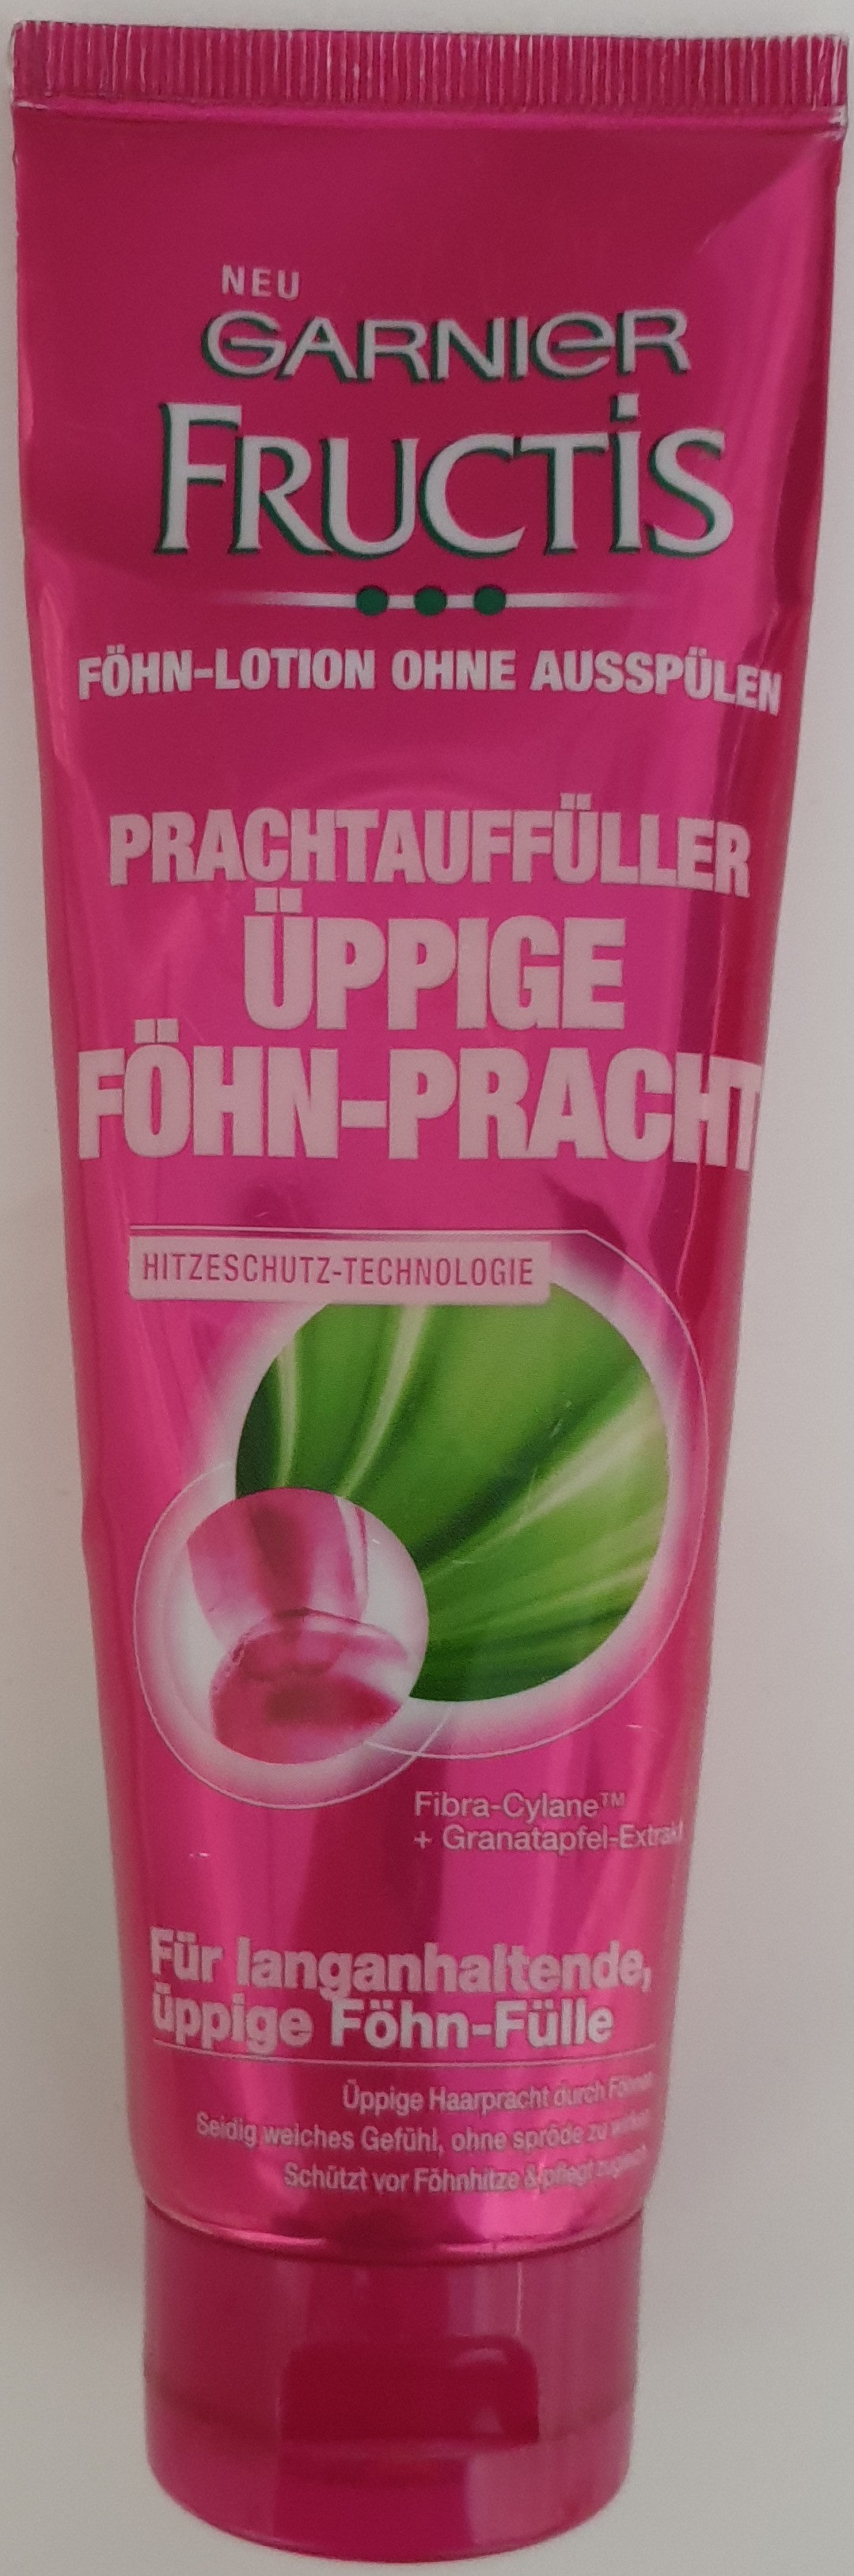 Fructis Prachtauffüller Föhn-Pracht - Produit - de